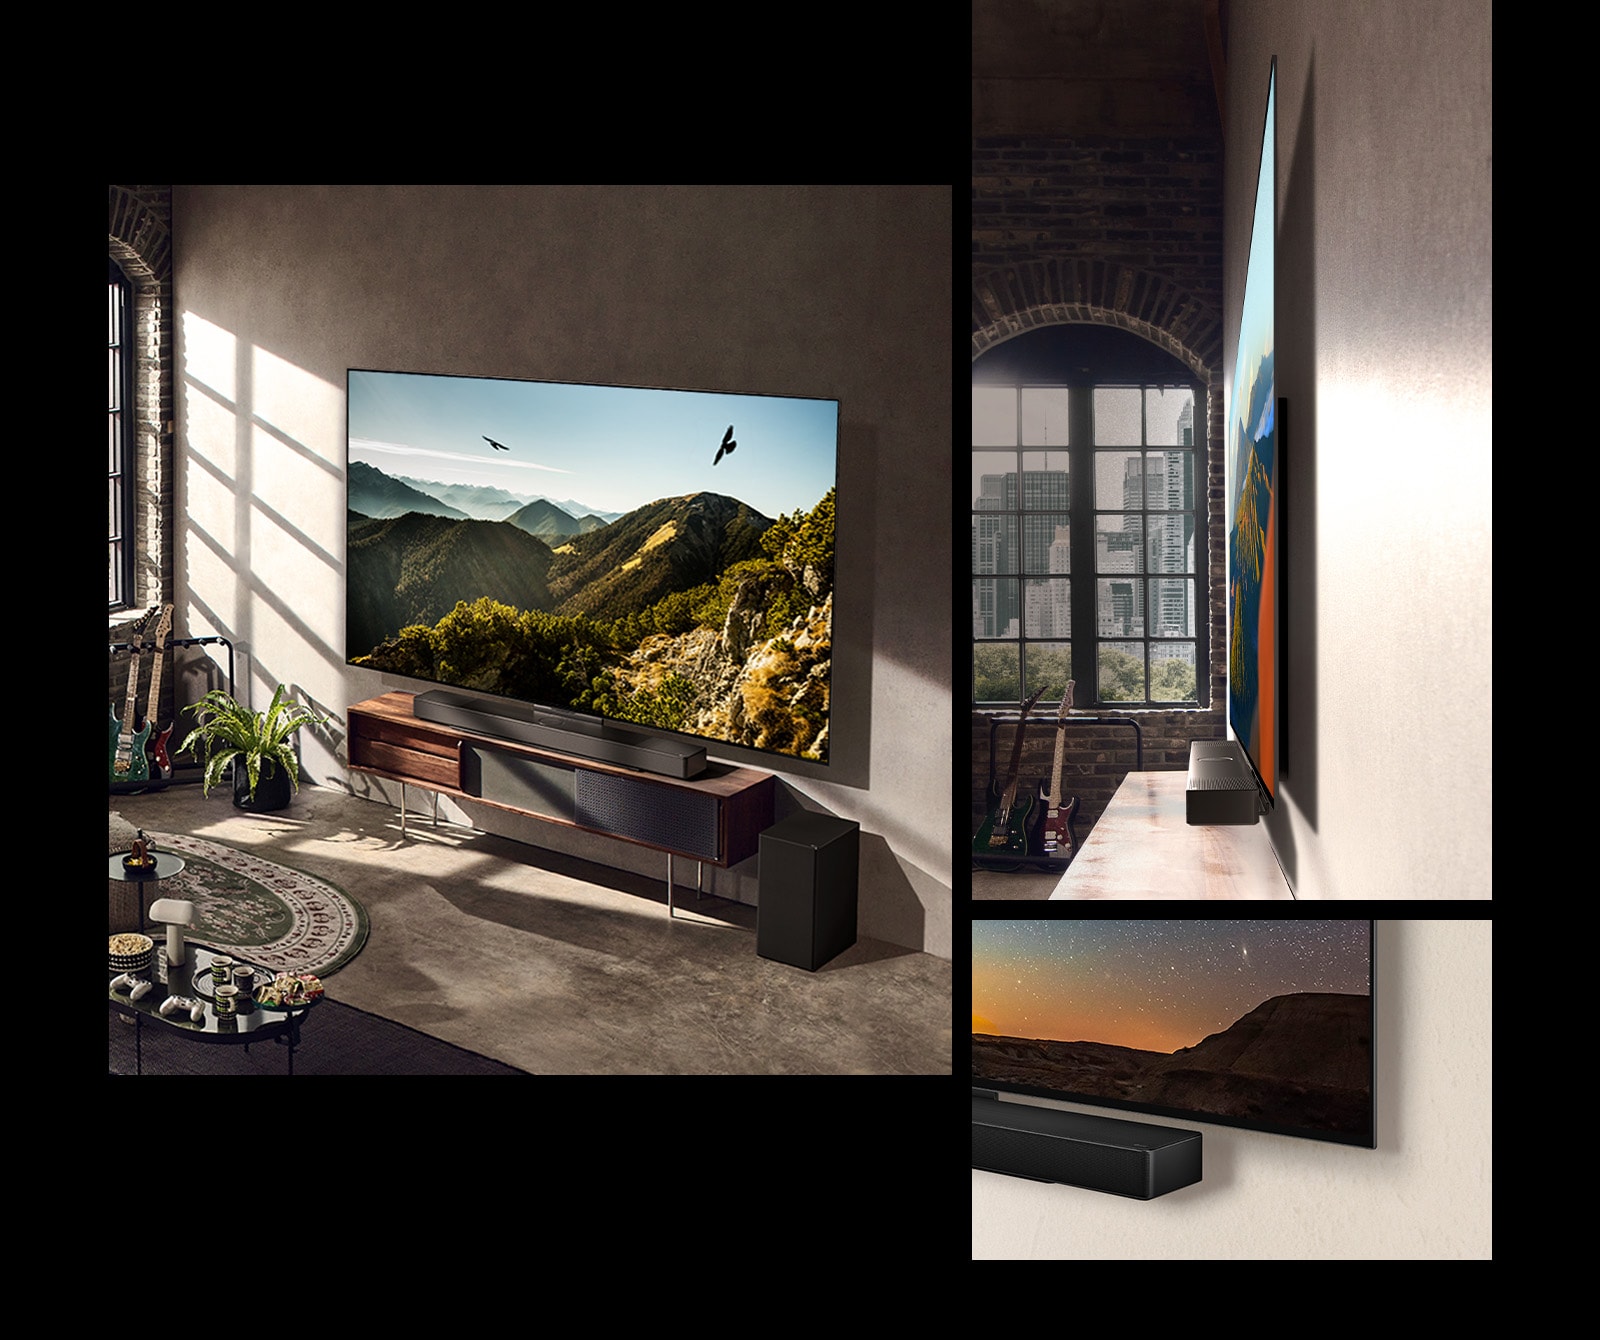 Slika LG OLED C3 z zvočno vrstico na steni v umetniški sobi. Stranski pogled na tanke dimenzije LG OLED C3 pred oknom s pogledom na mestno pokrajino. Spodnji kot LG OLED C3 in zvočne vrstice.